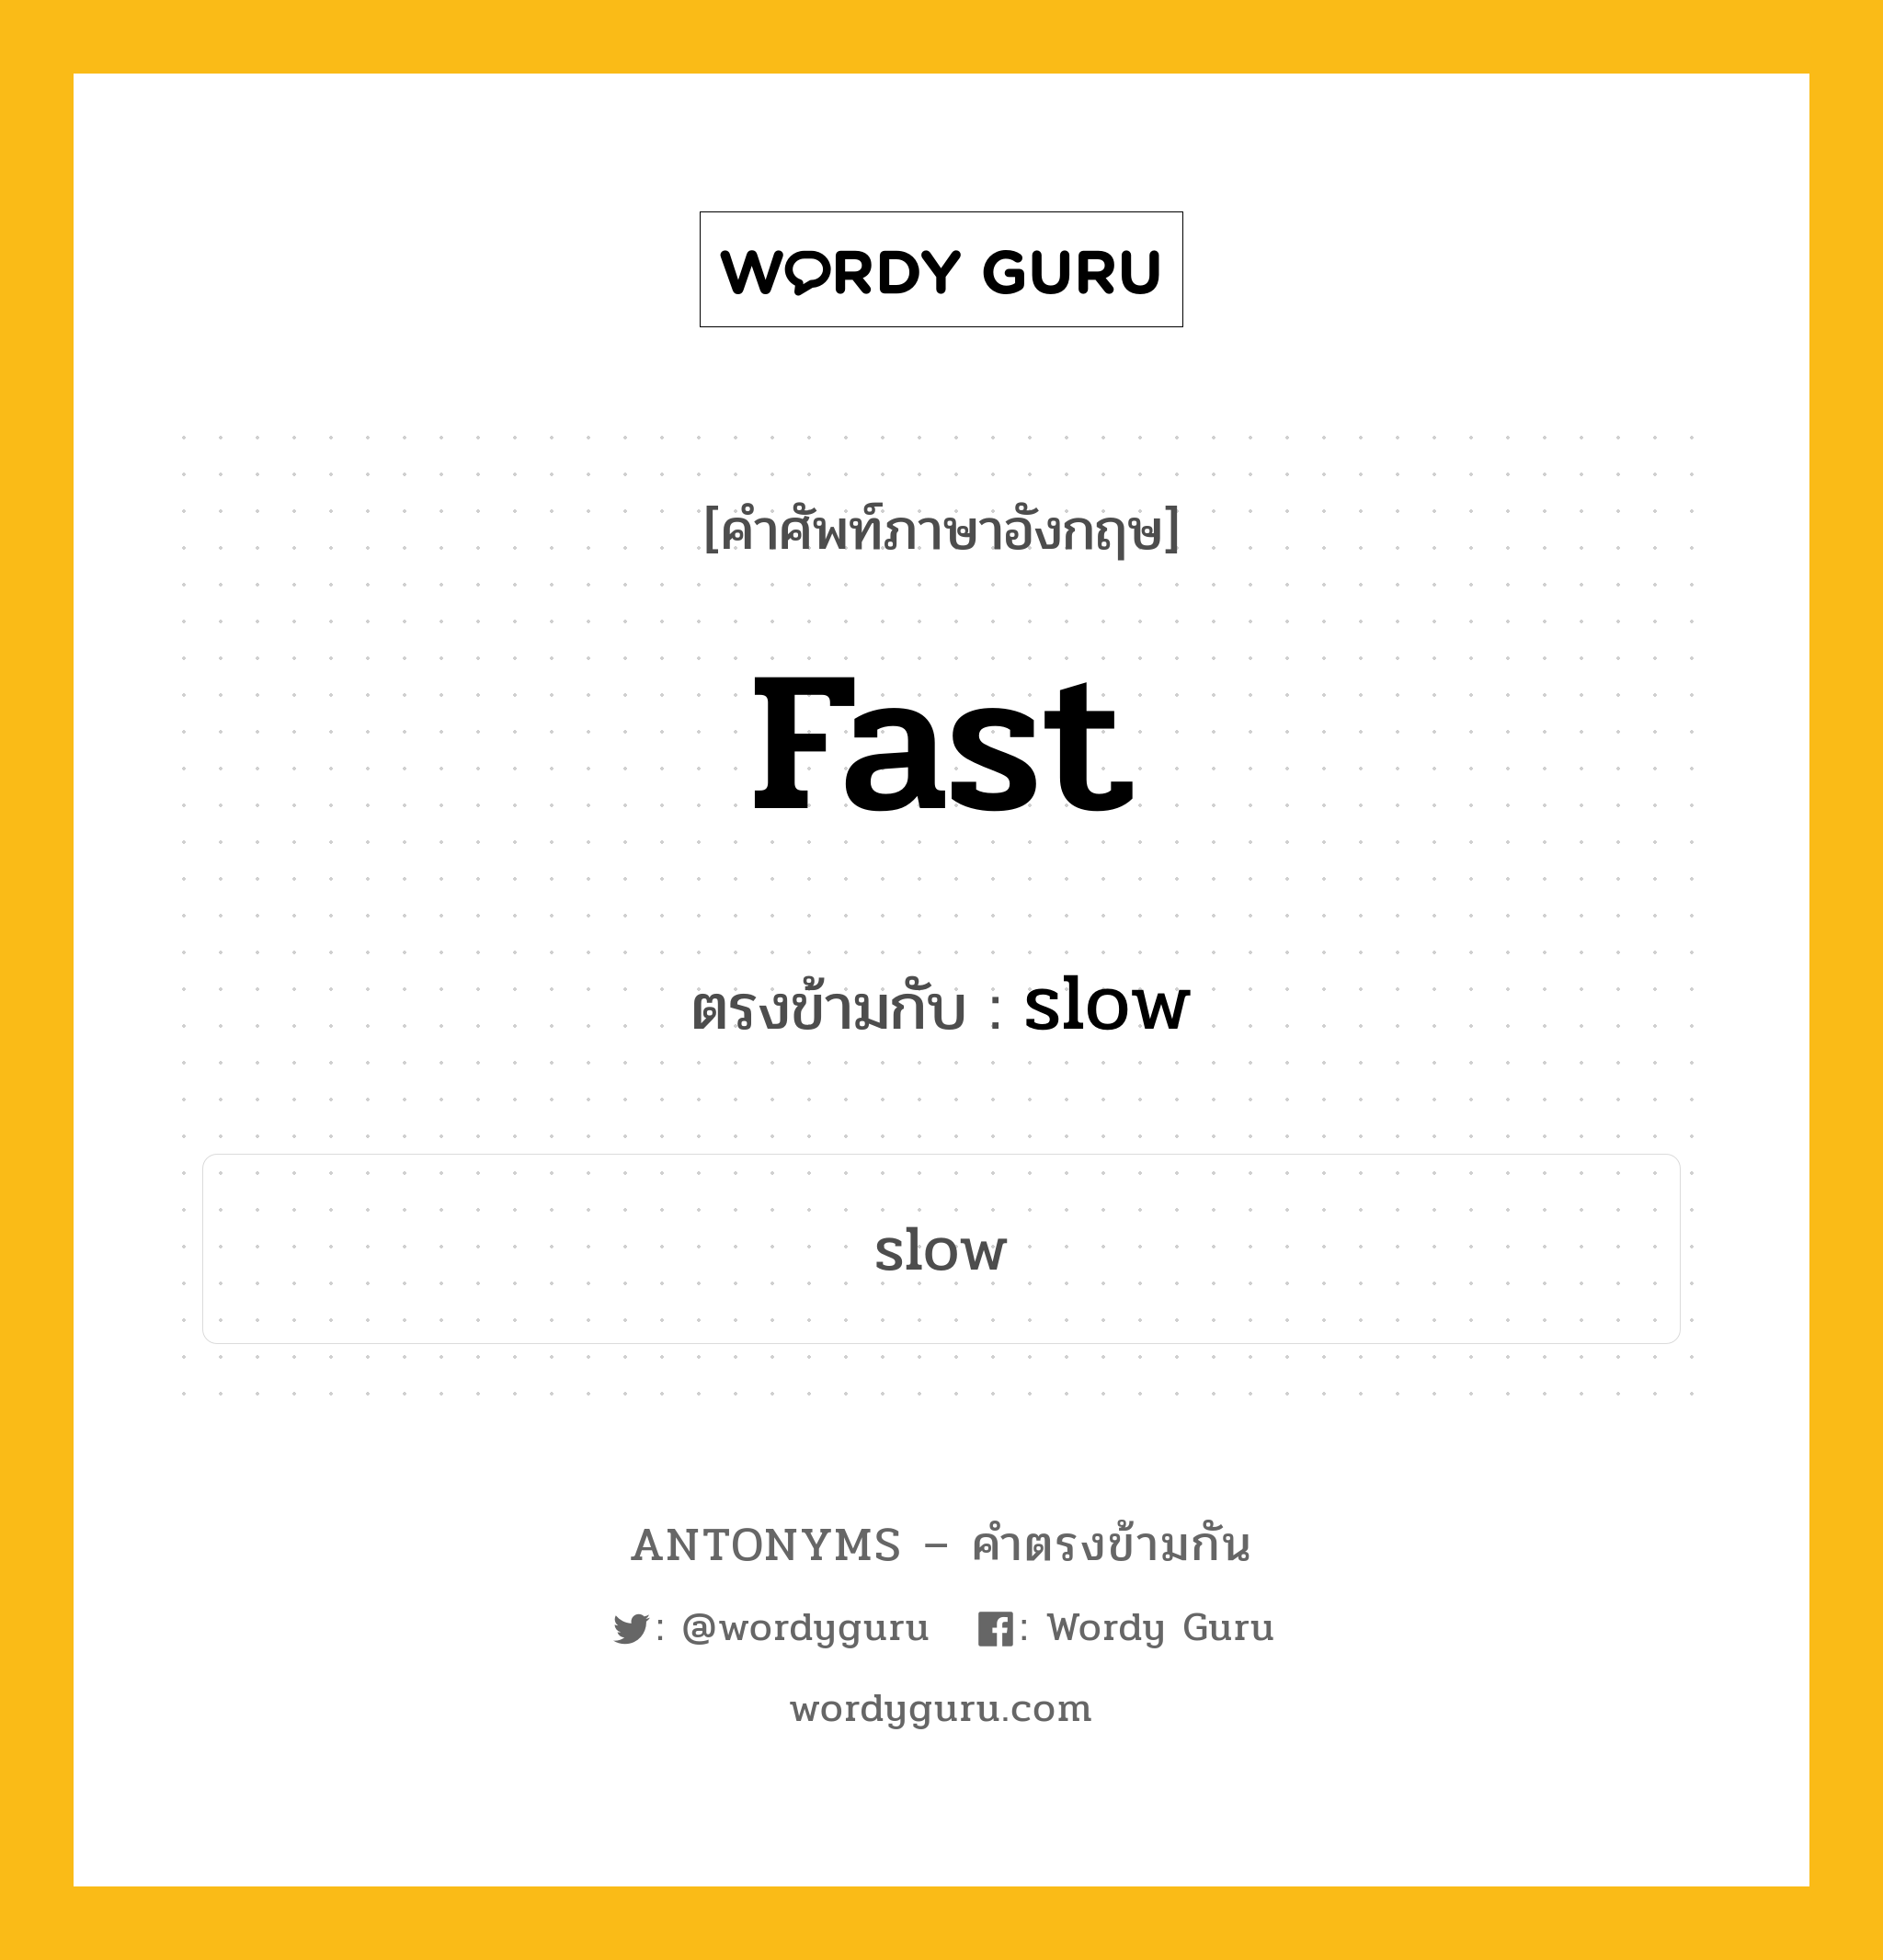 fast เป็นคำตรงข้ามกับคำไหนบ้าง?, คำศัพท์ภาษาอังกฤษ fast ตรงข้ามกับ slow หมวด slow